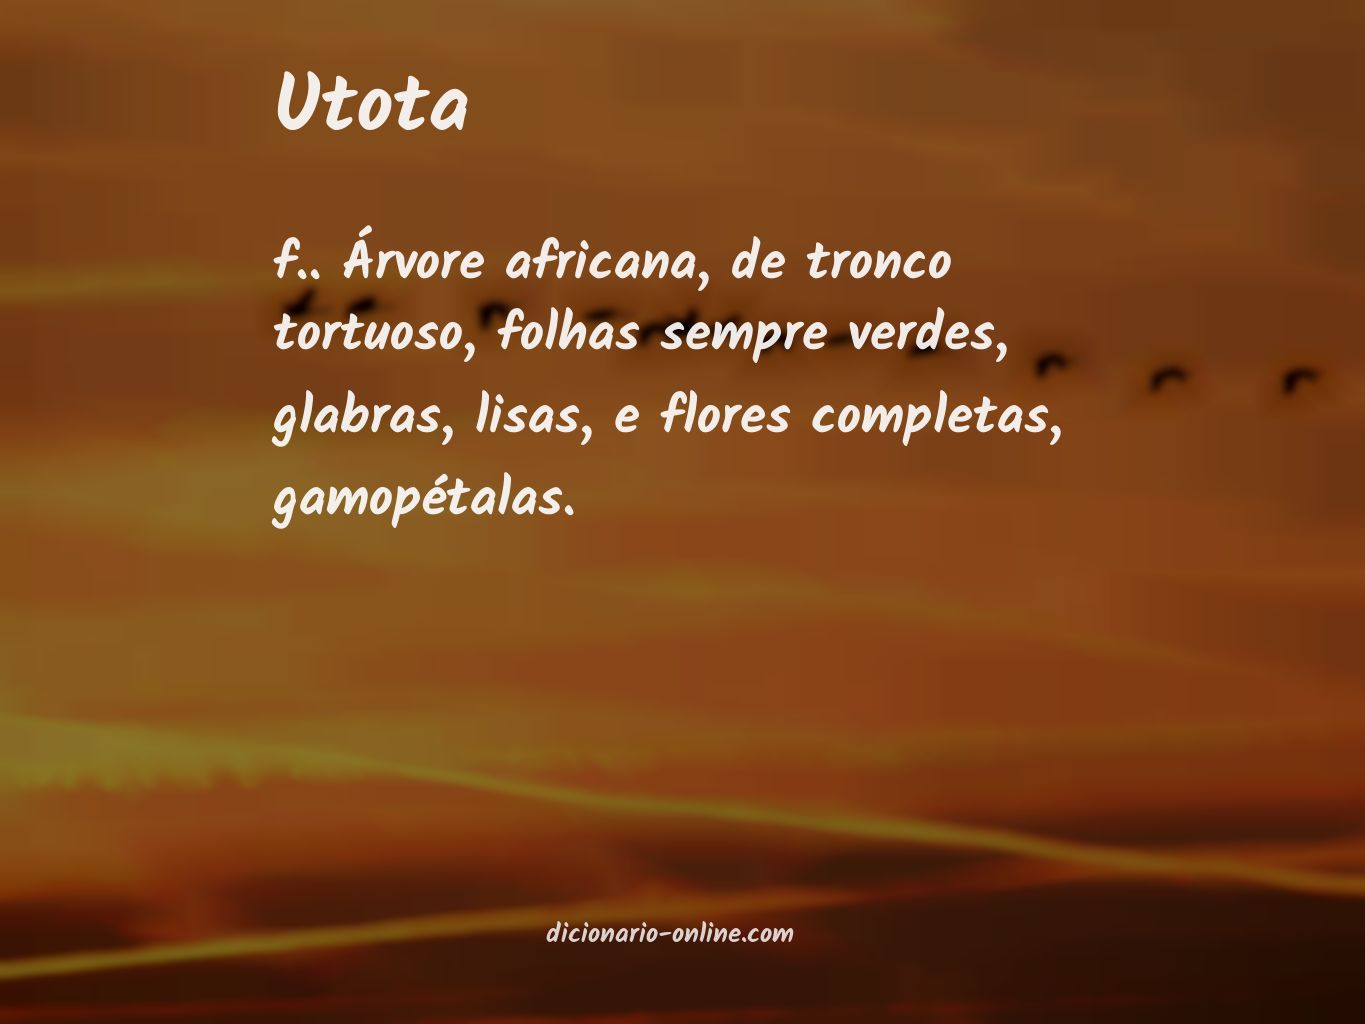 Significado de utota